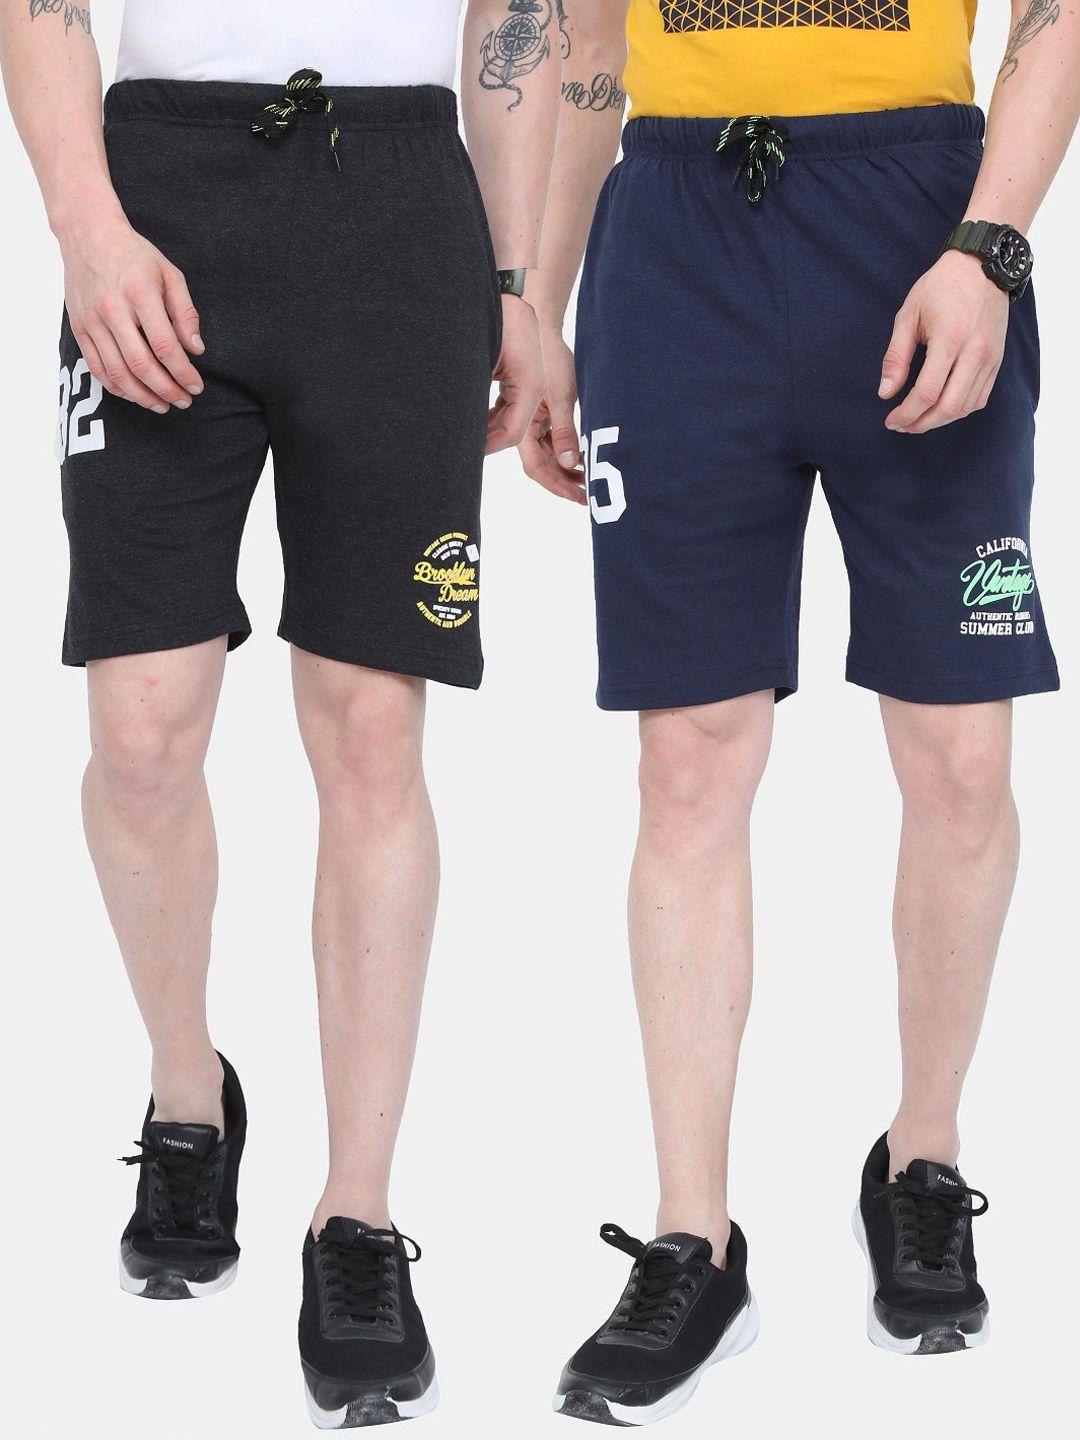 ardeur men set of 2 multi printed training or gym sports shorts